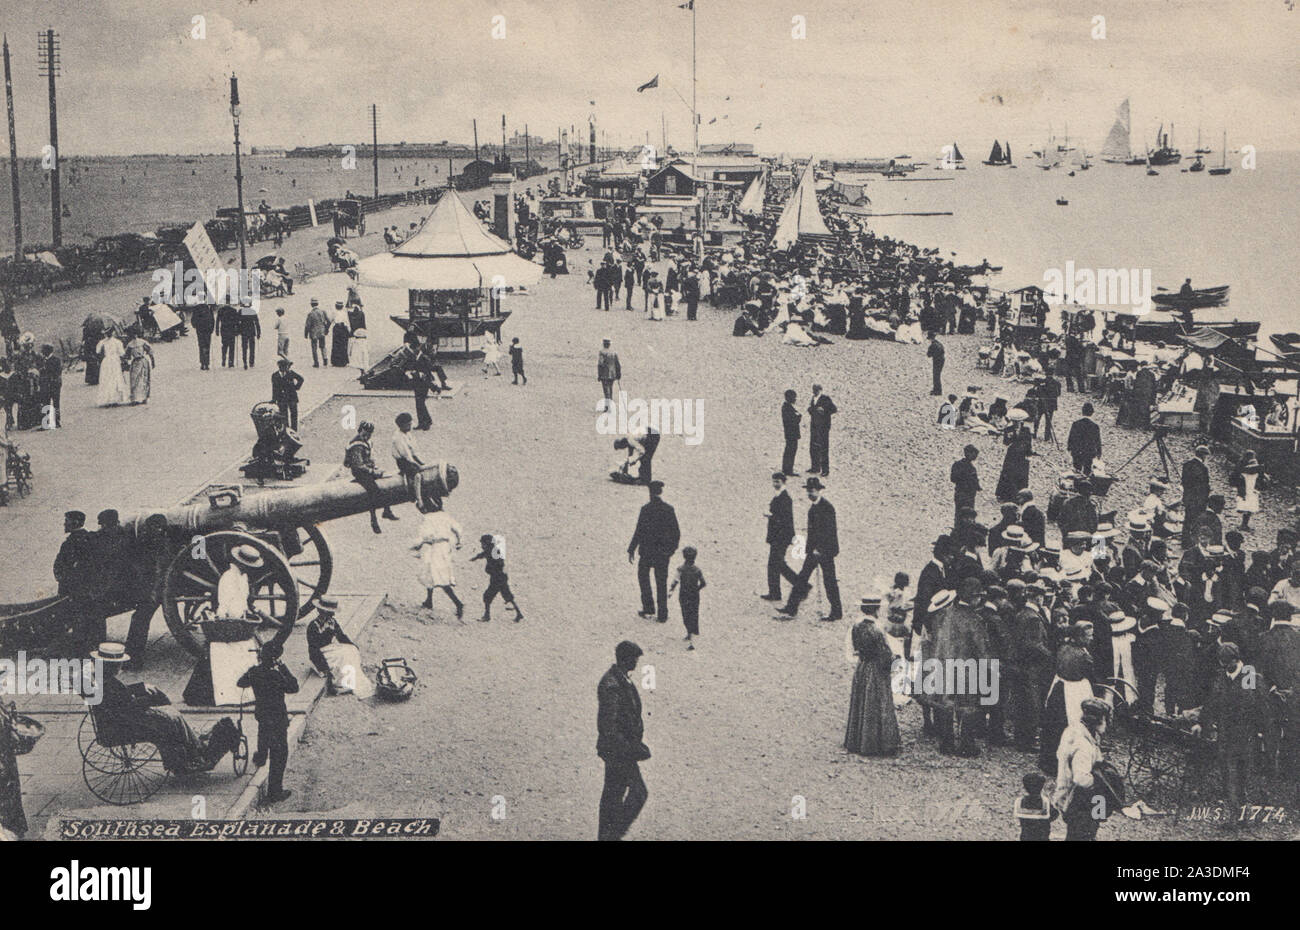 Edwardian cartolina con gente che si diverte a Southsea Esplanade e la spiaggia, Portsmouth, Hampshire. Foto Stock